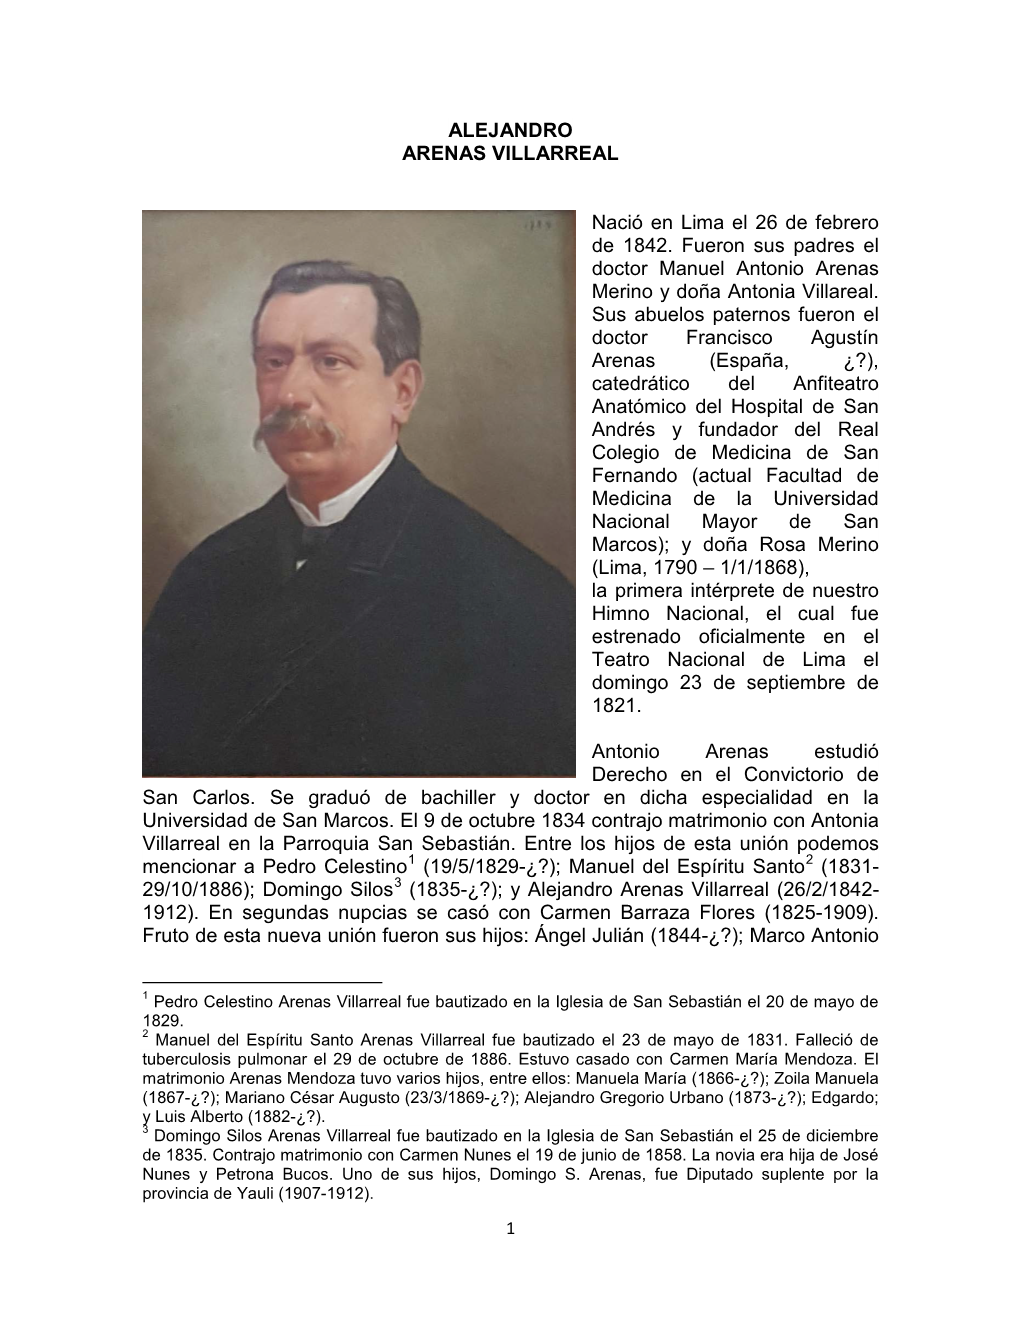 ALEJANDRO ARENAS VILLARREAL Nació En Lima El 26 De Febrero De 1842. Fueron Sus Padres El Doctor Manuel Antonio Arenas Merino Y